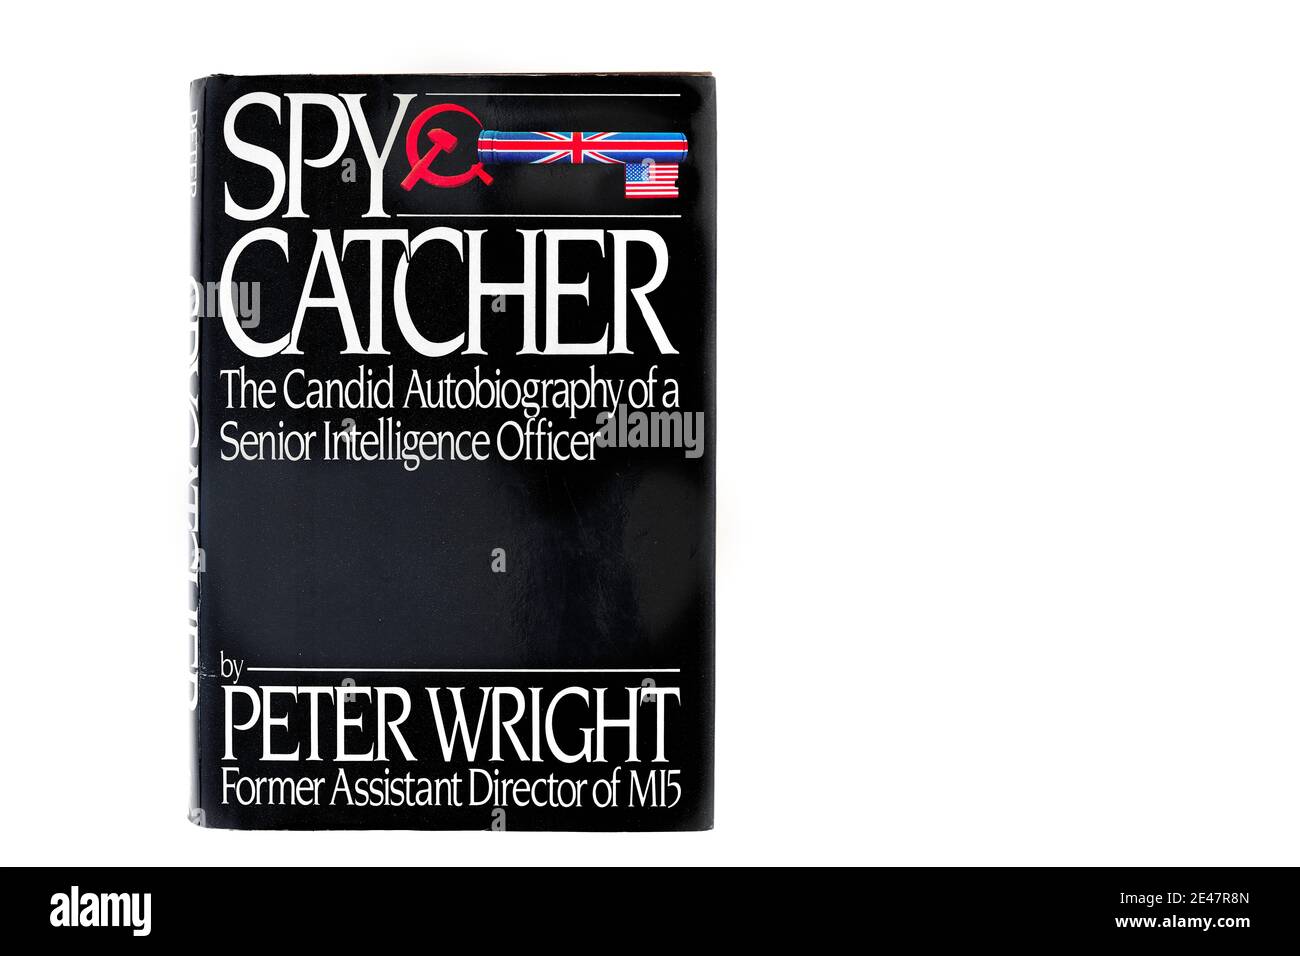 Buchcover von 'Spy Catcher', Autobiographie von Peter Wright, ehemaliger stellvertretender Direktor der englischen MI5-Gegenspionageagentur. Stockfoto